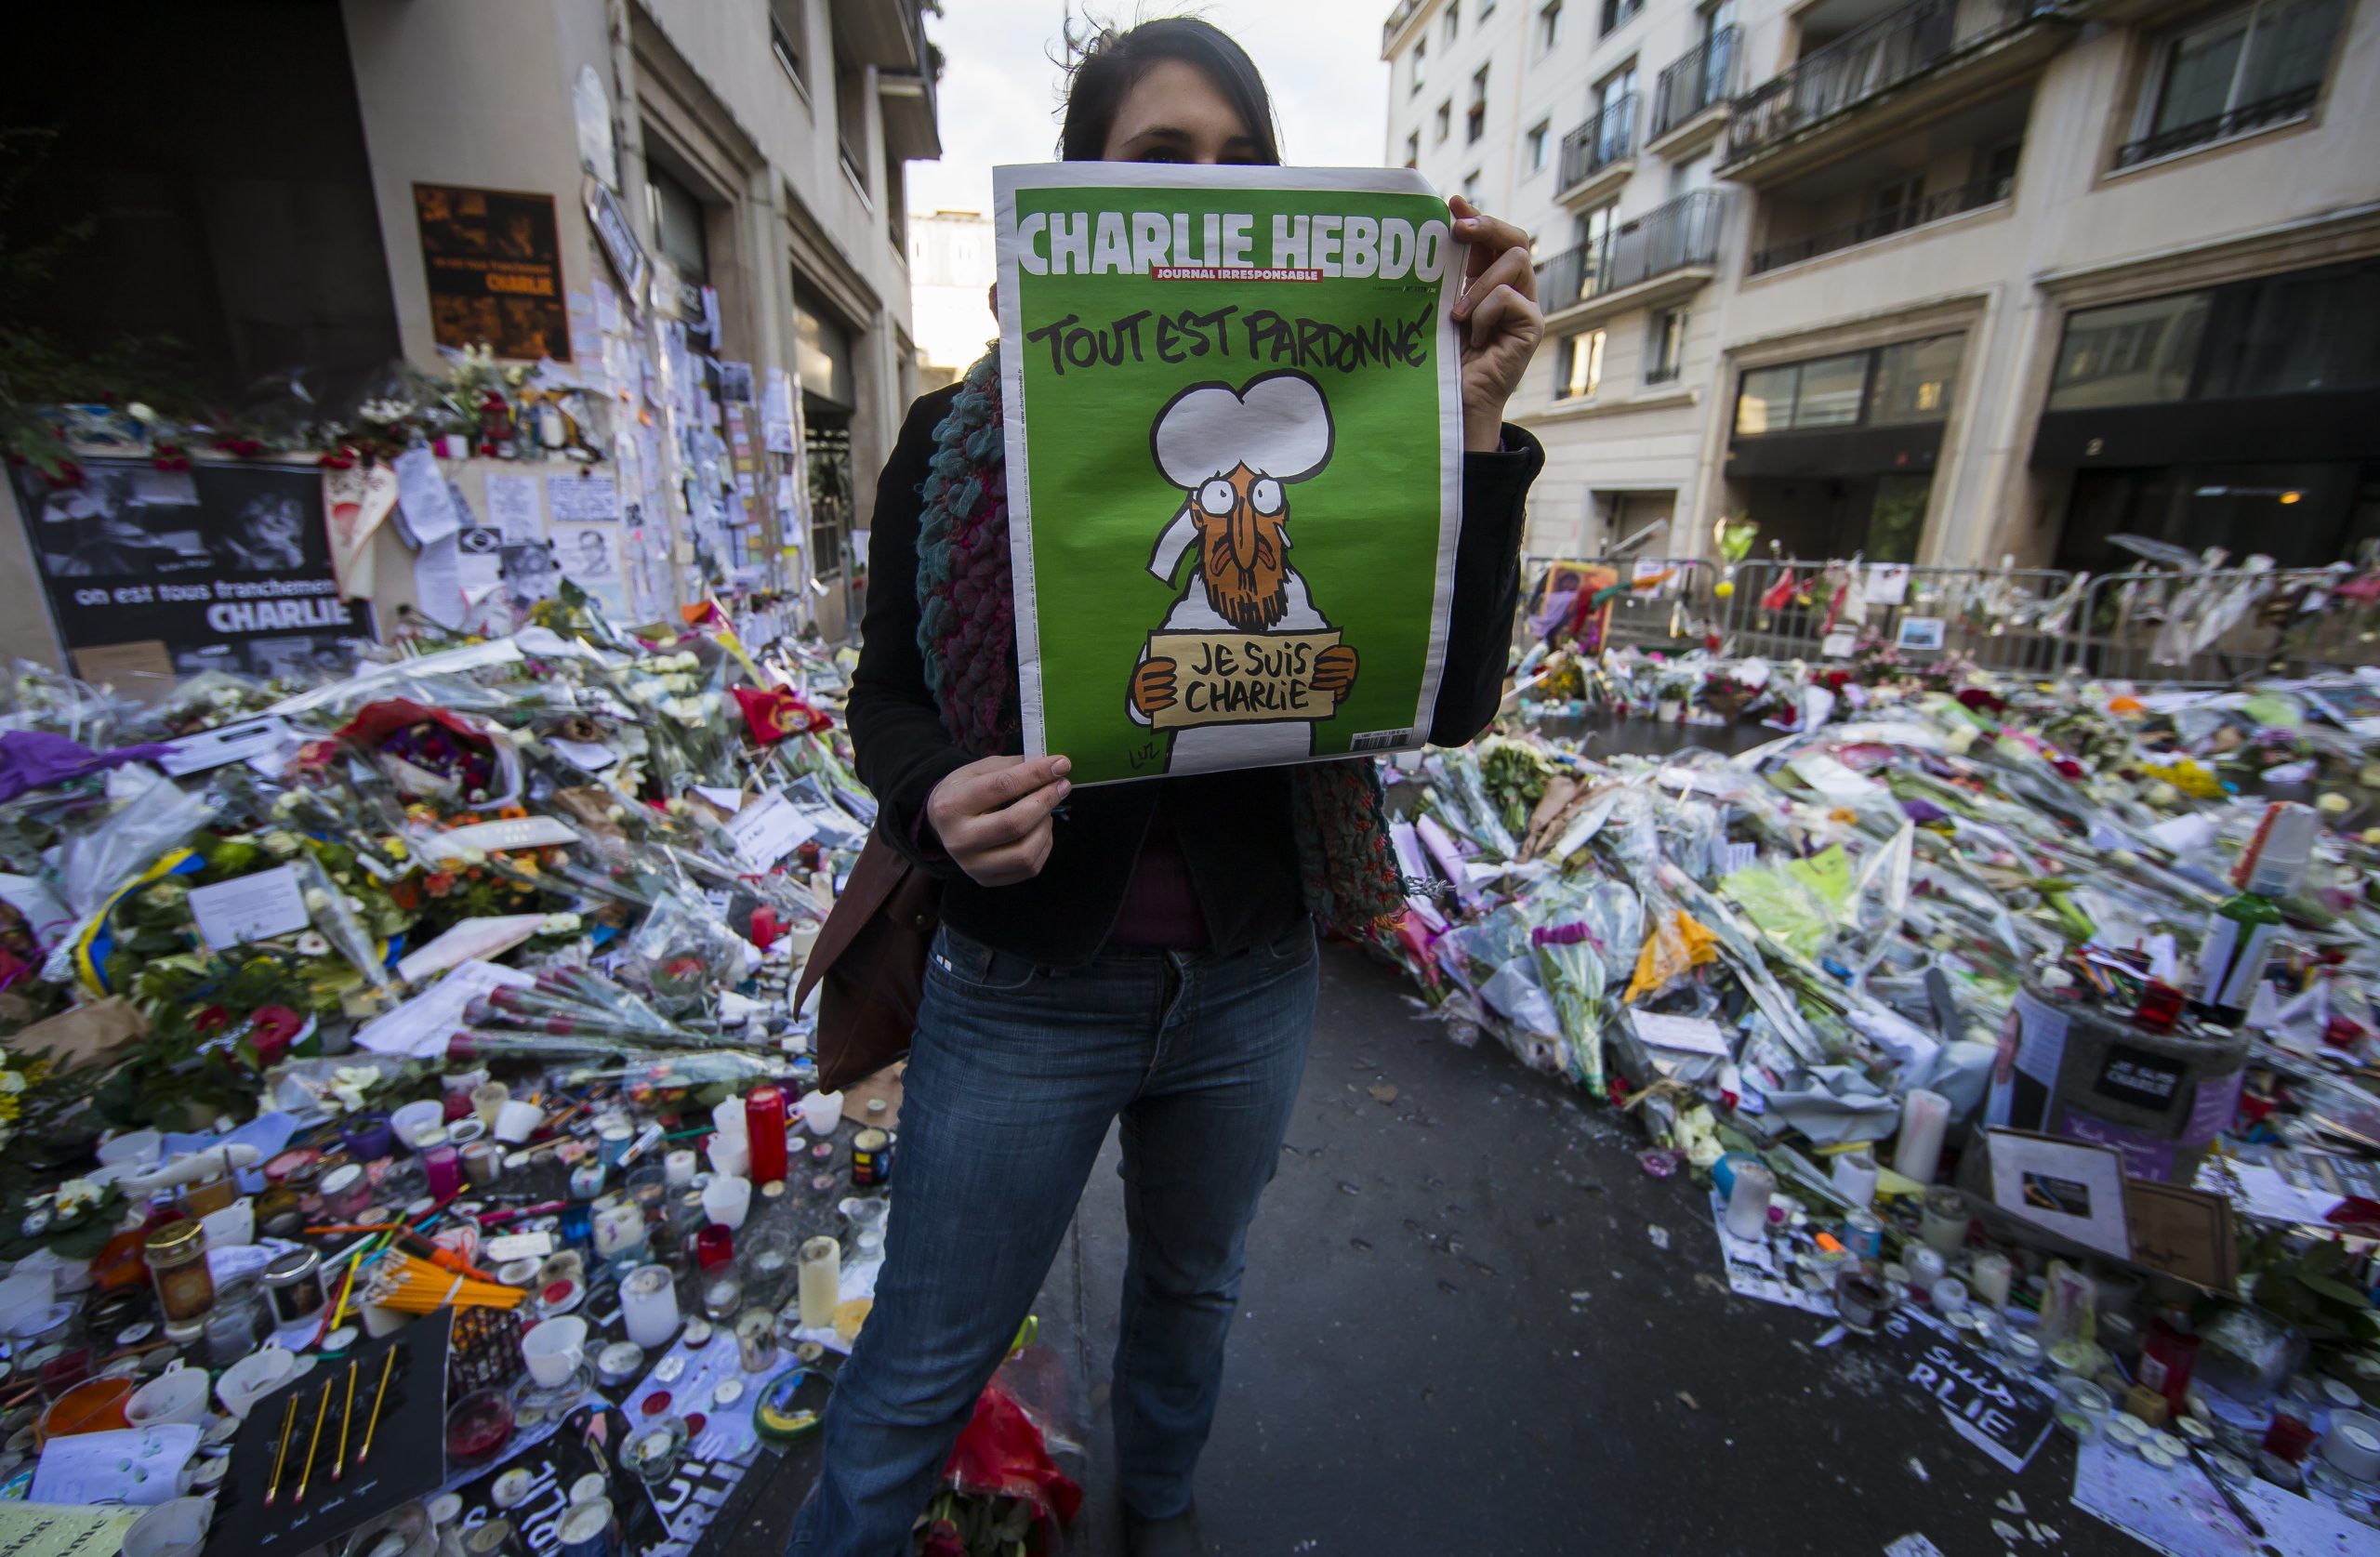 Pretnje Danasu da će “završiti kao Šarli ebdo”, francuski satirični list: Šta se desilo 7. januara 2015. kada je ubijeno 12 ljudi? 2